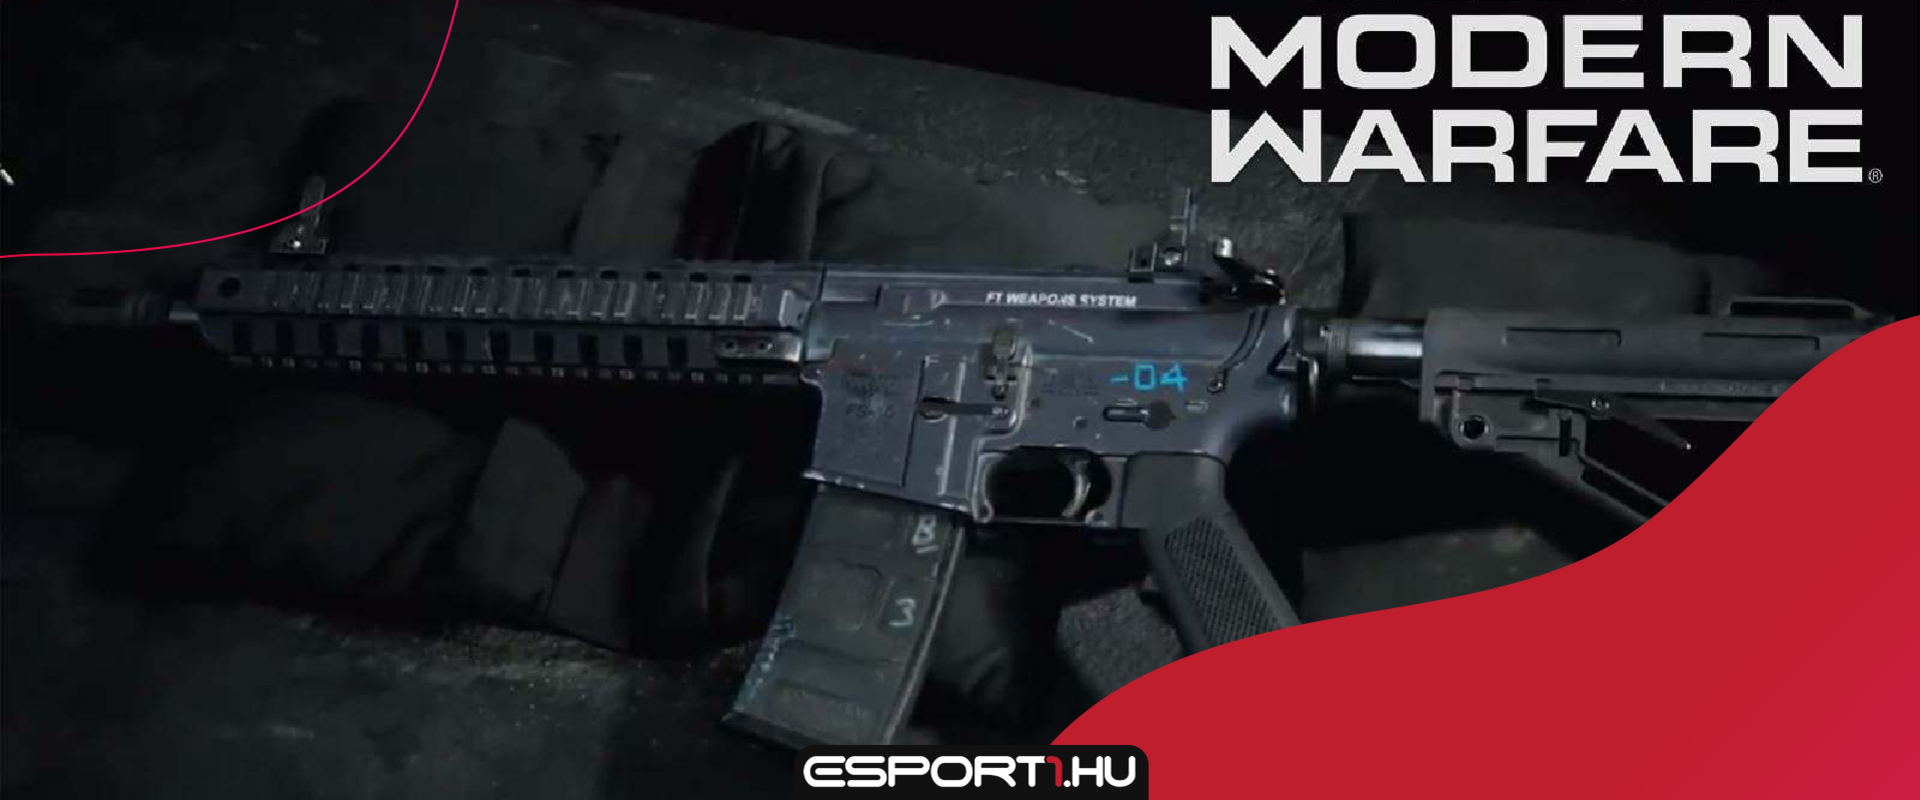 Alaposan testreszabhatjuk a Gunsmith rendszerrel a fegyvereinket a CoD Modern Warfare-ben!